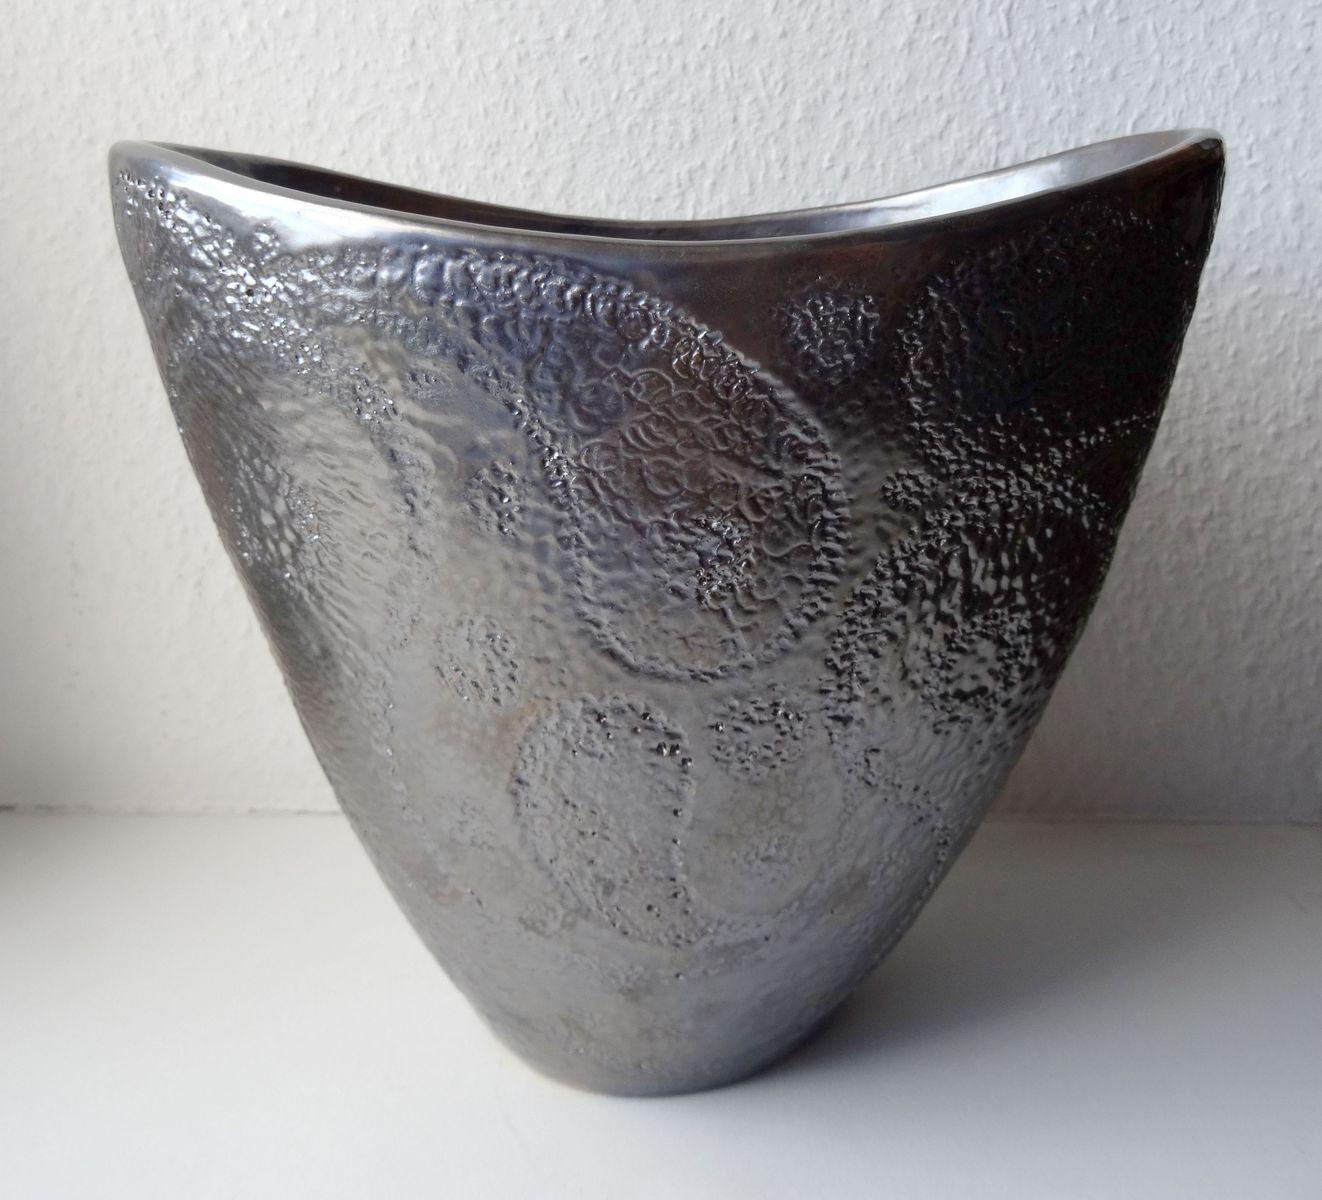 Vase mit silberner Glasur 2017. Massivsteinstein, 19x23,5x15,5 cm – Sculpture von Elina Titane 